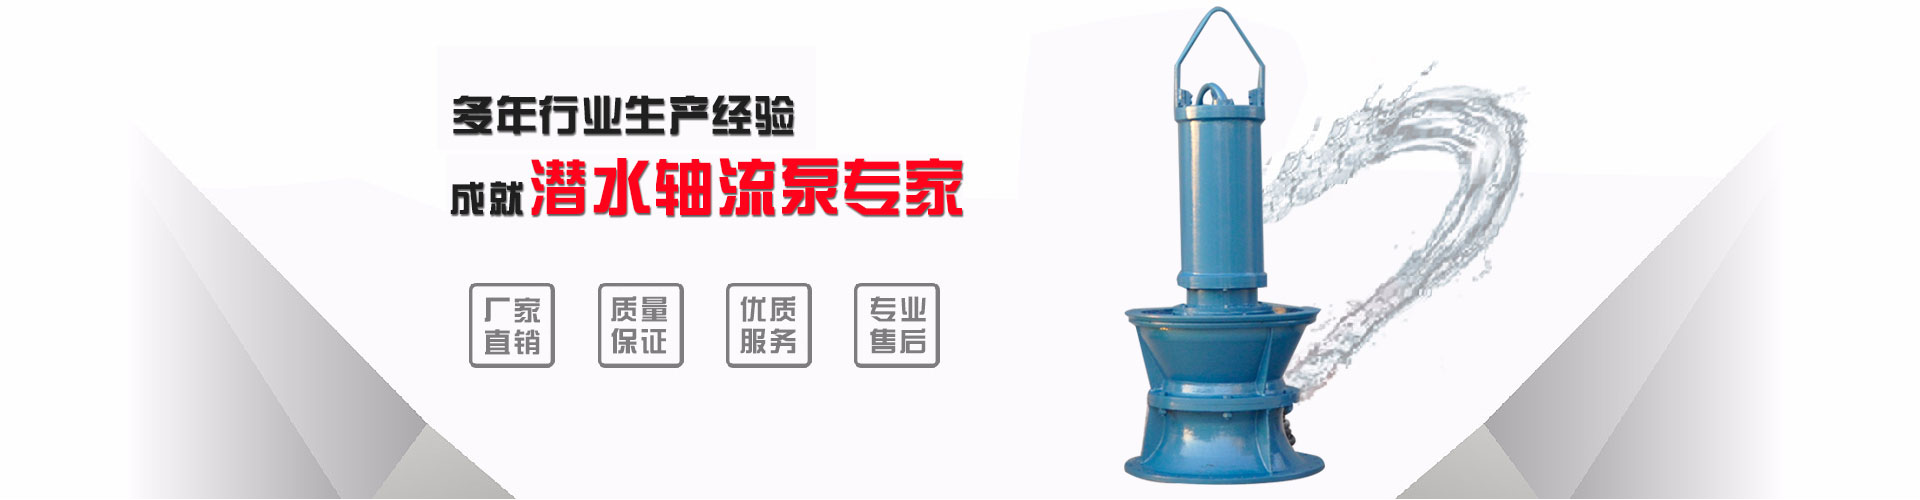 重庆700QH-50井筒式潜水轴流泵_潜水轴流泵